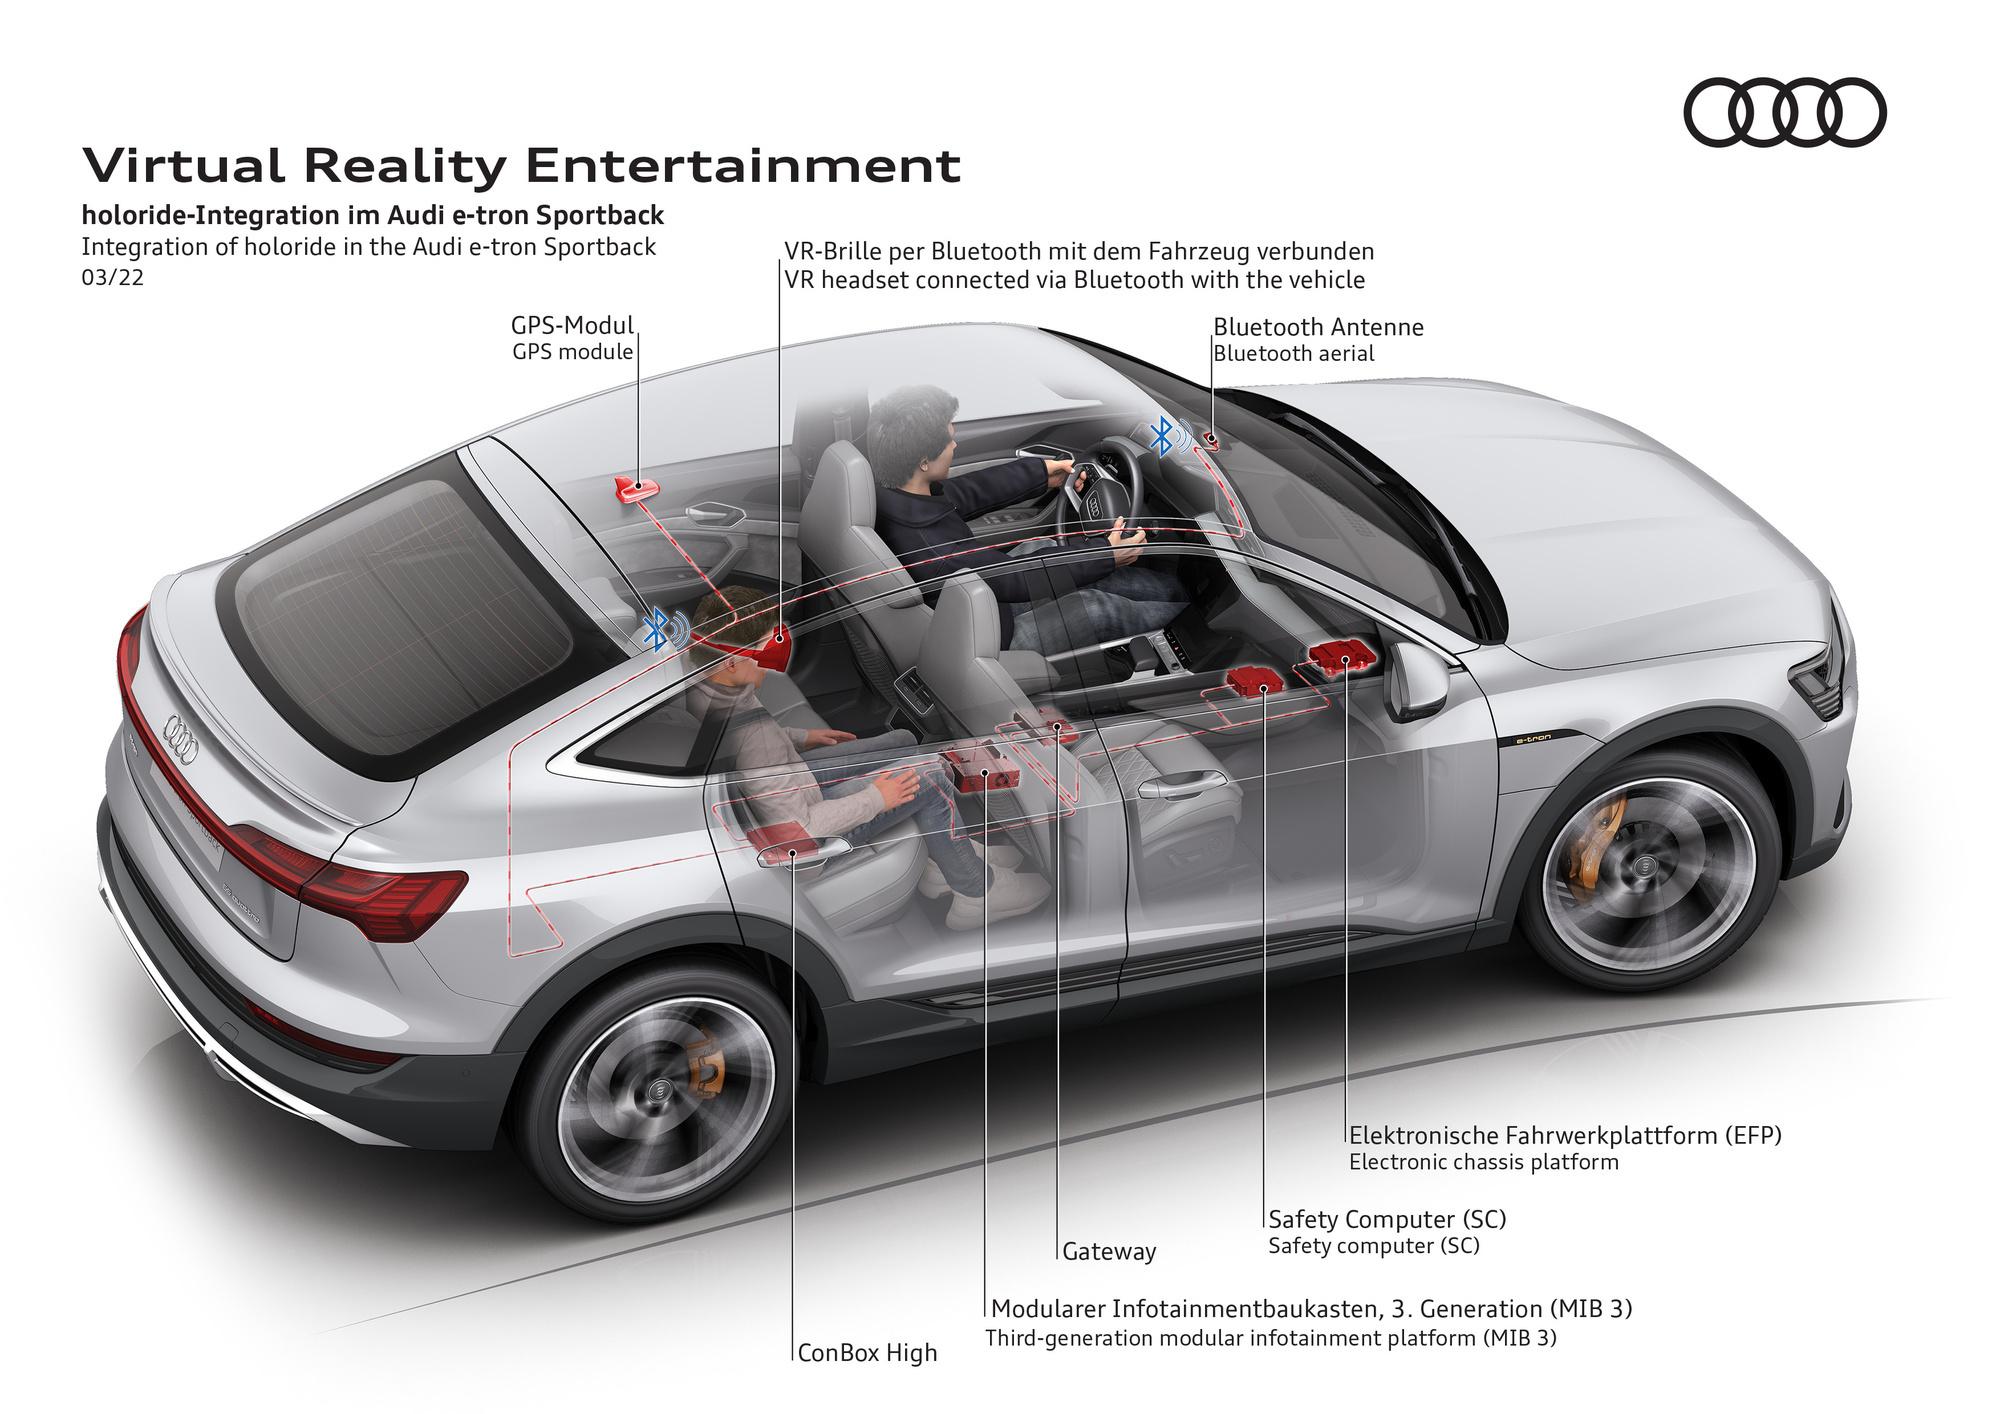 Audi brengt met 'holoride' virtual reality naar de achterbank